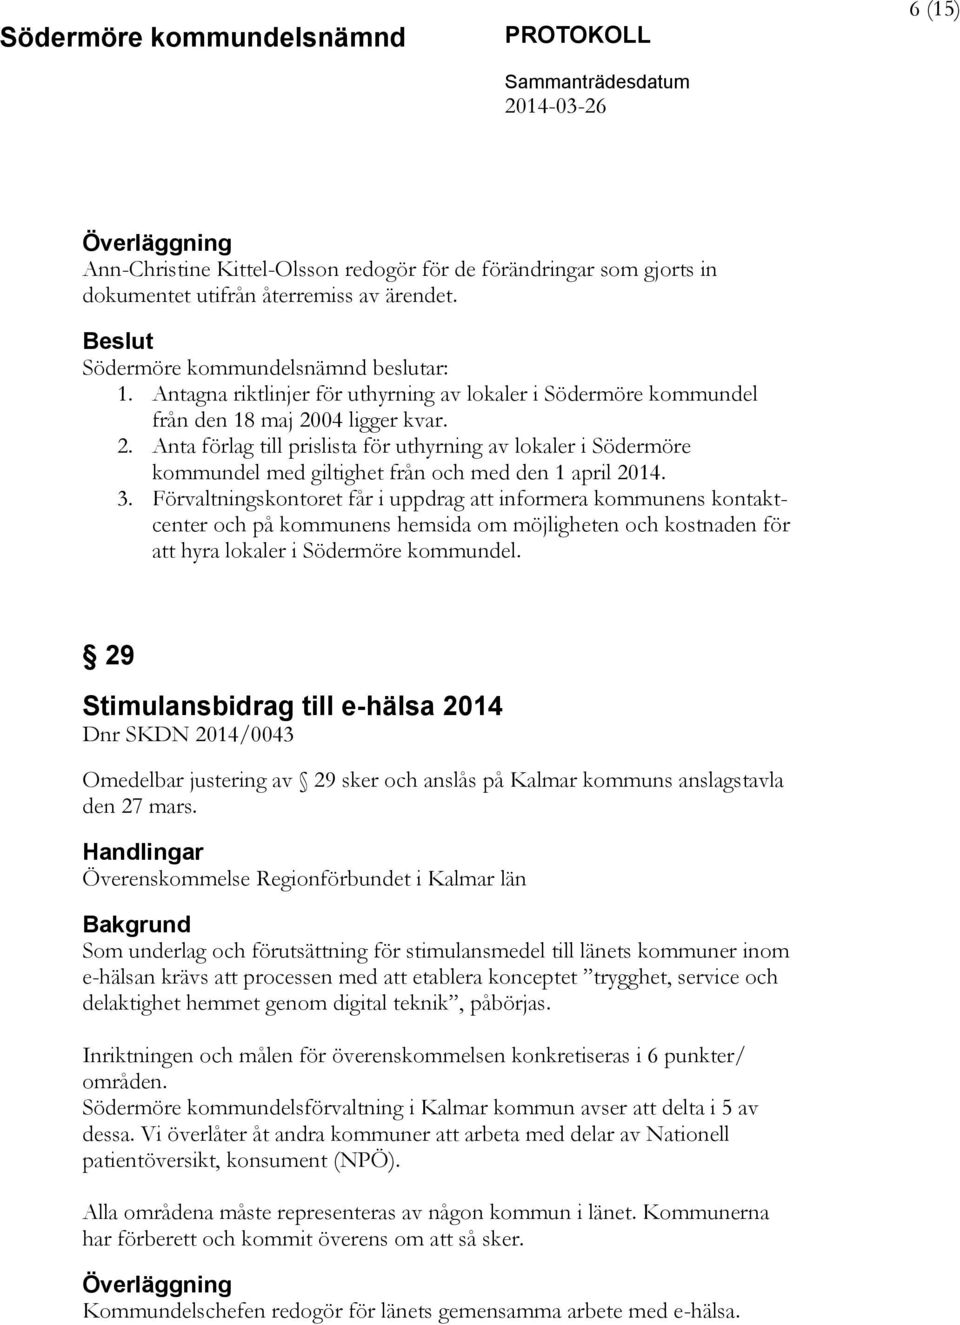 04 ligger kvar. 2. Anta förlag till prislista för uthyrning av lokaler i Södermöre kommundel med giltighet från och med den 1 april 2014. 3.